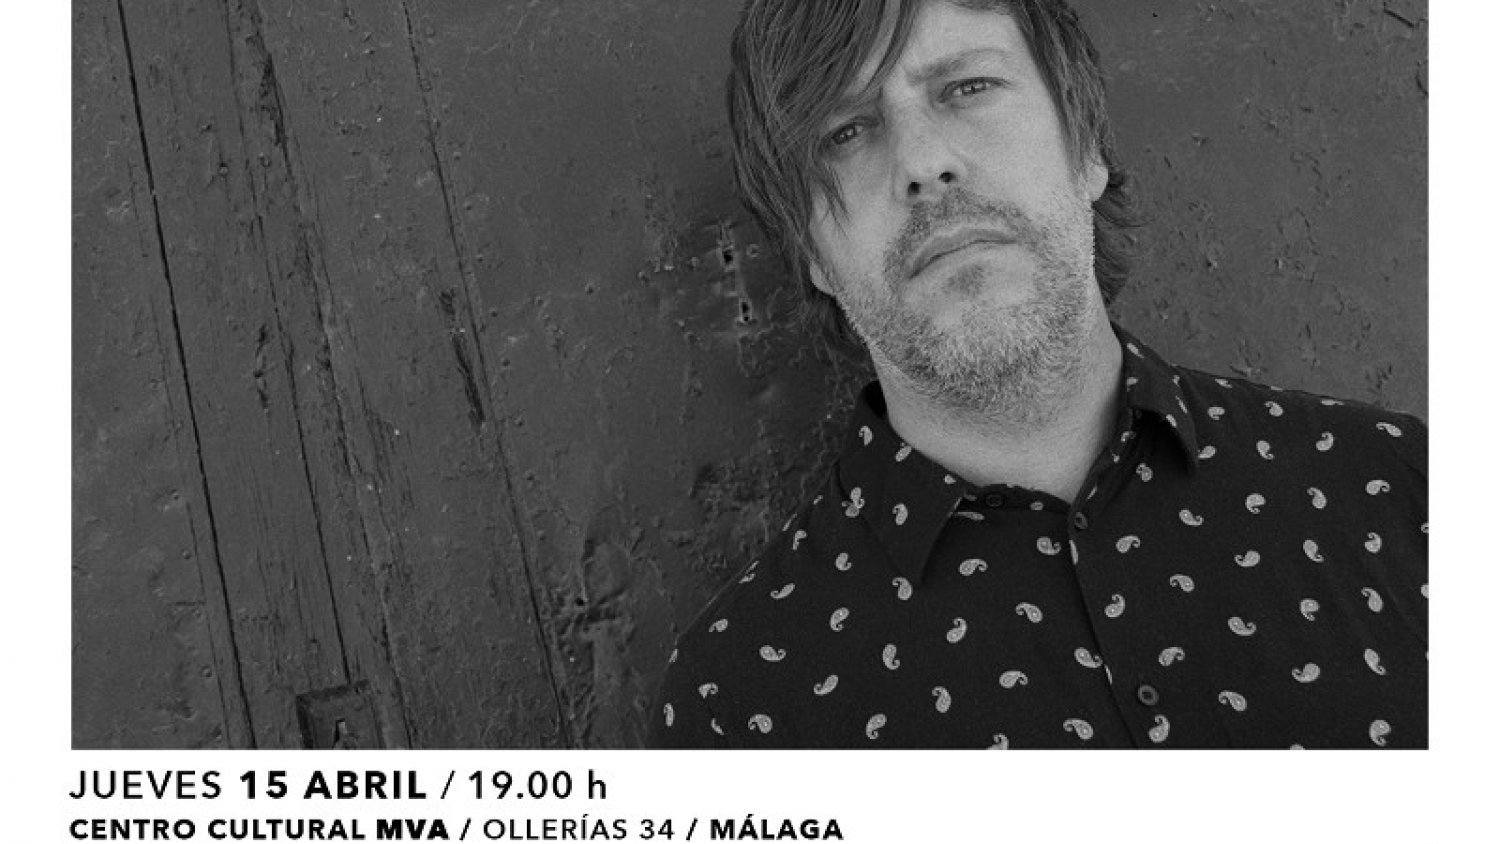 El centro cultural MVA recibe el próximo 15 de abril al cantante de hardcore-rock Dani Llamas